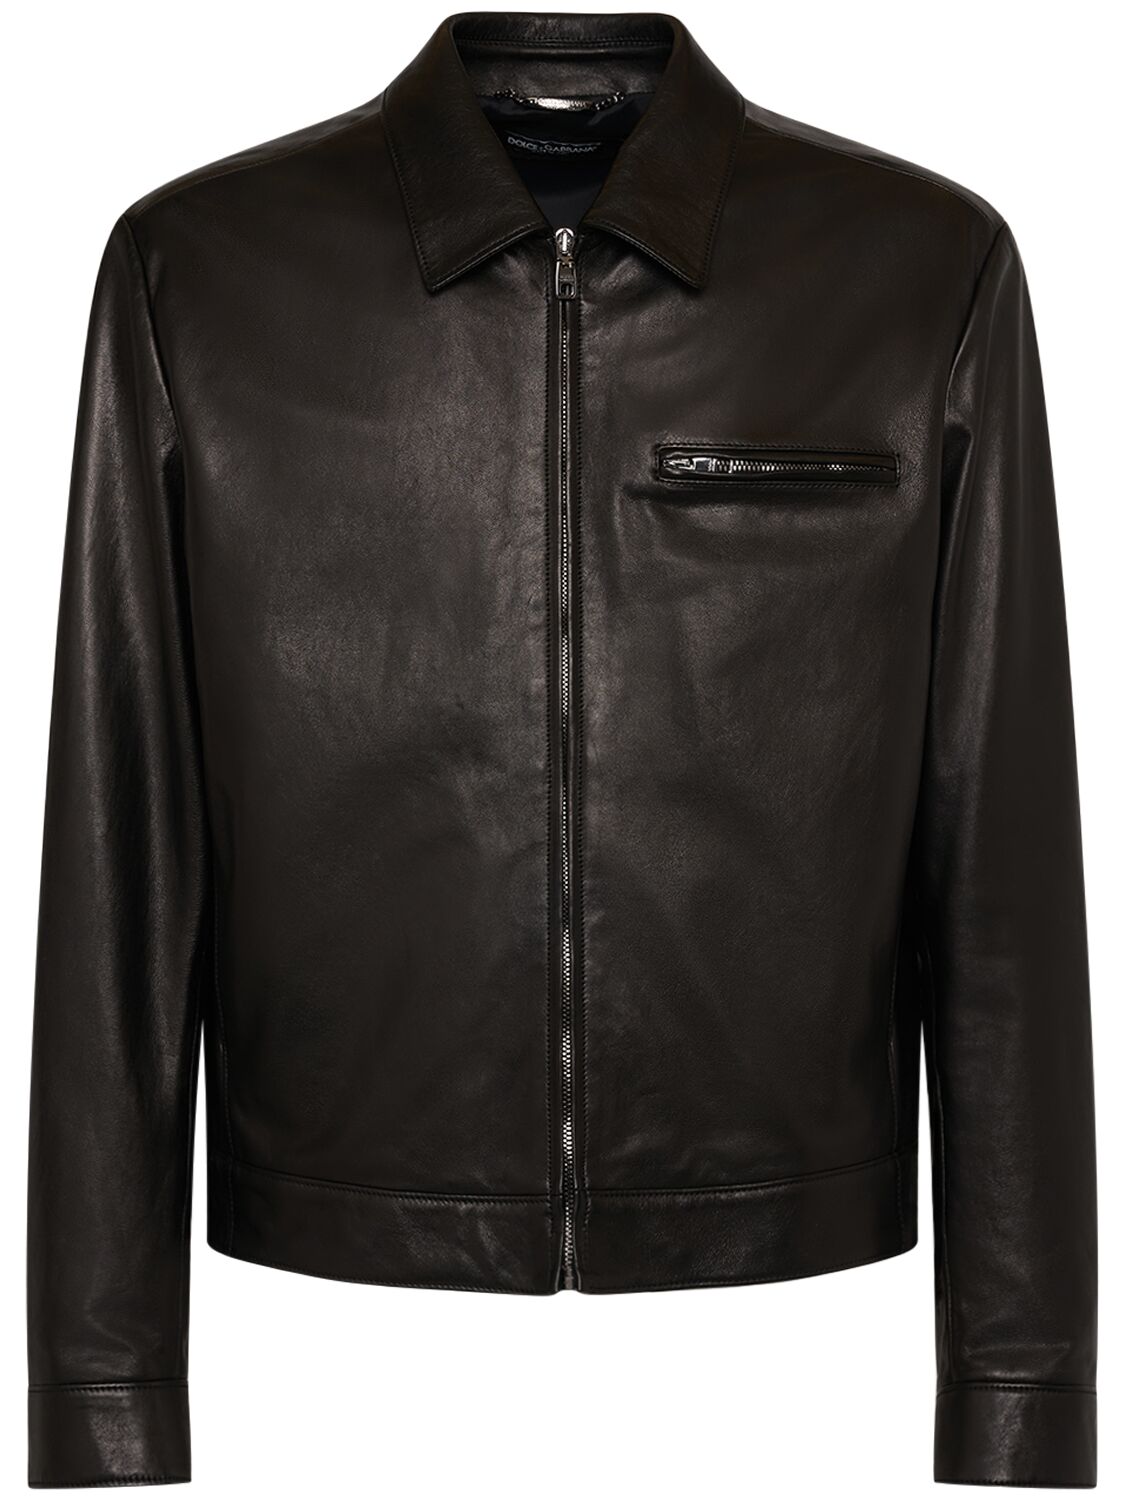 Leather Zip Jacket